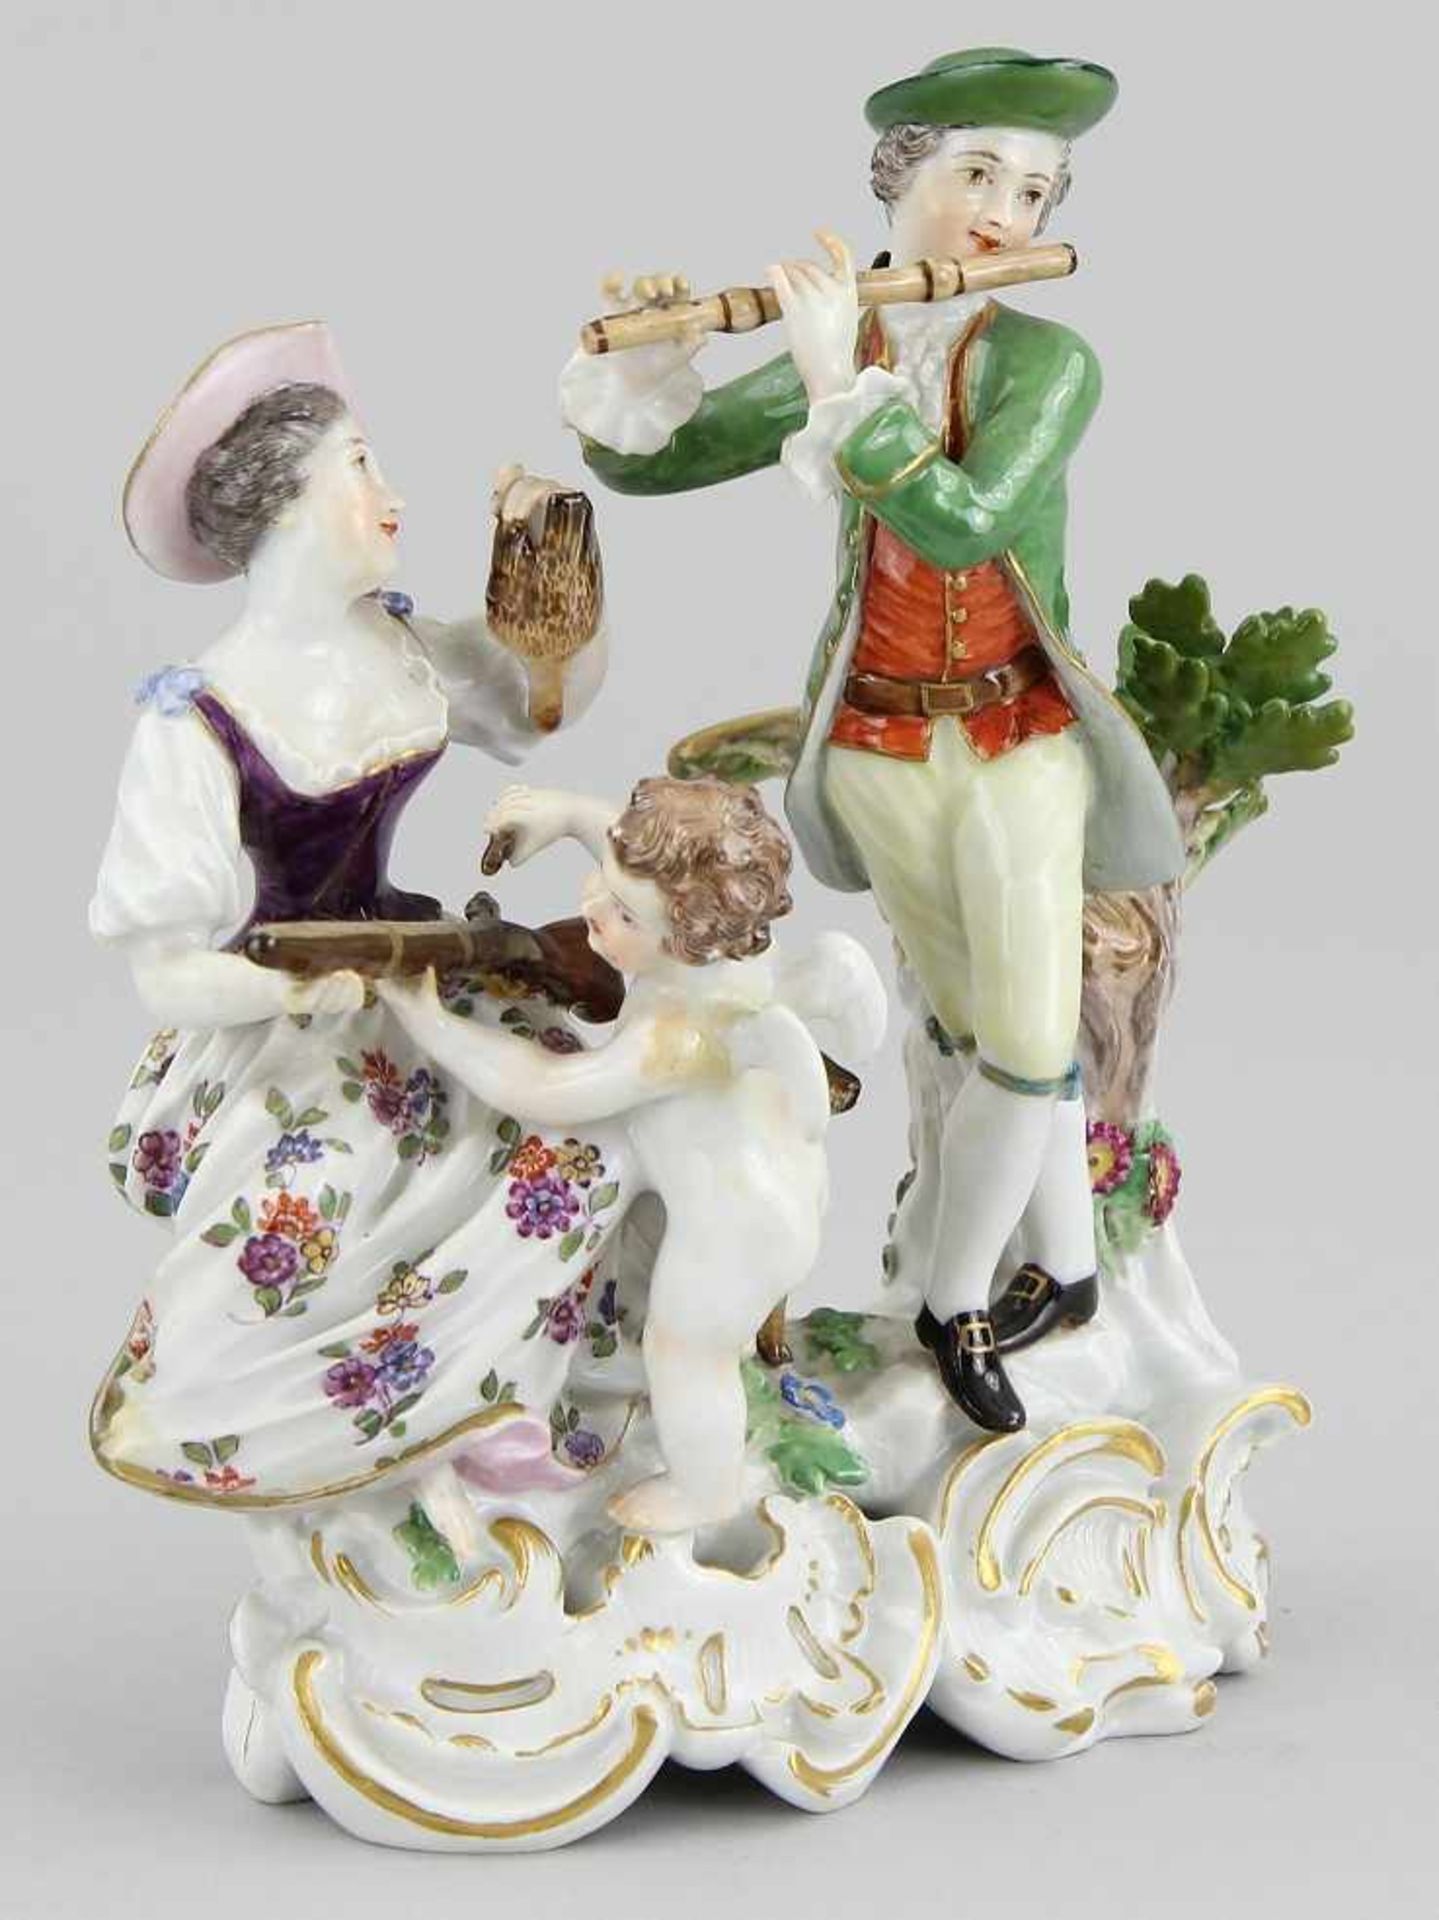 Meissen - Figurengruppe "Allegorie der Jagd" Porzellan farbig bemalt und leicht vergoldet, Jägerpaar - Bild 3 aus 5